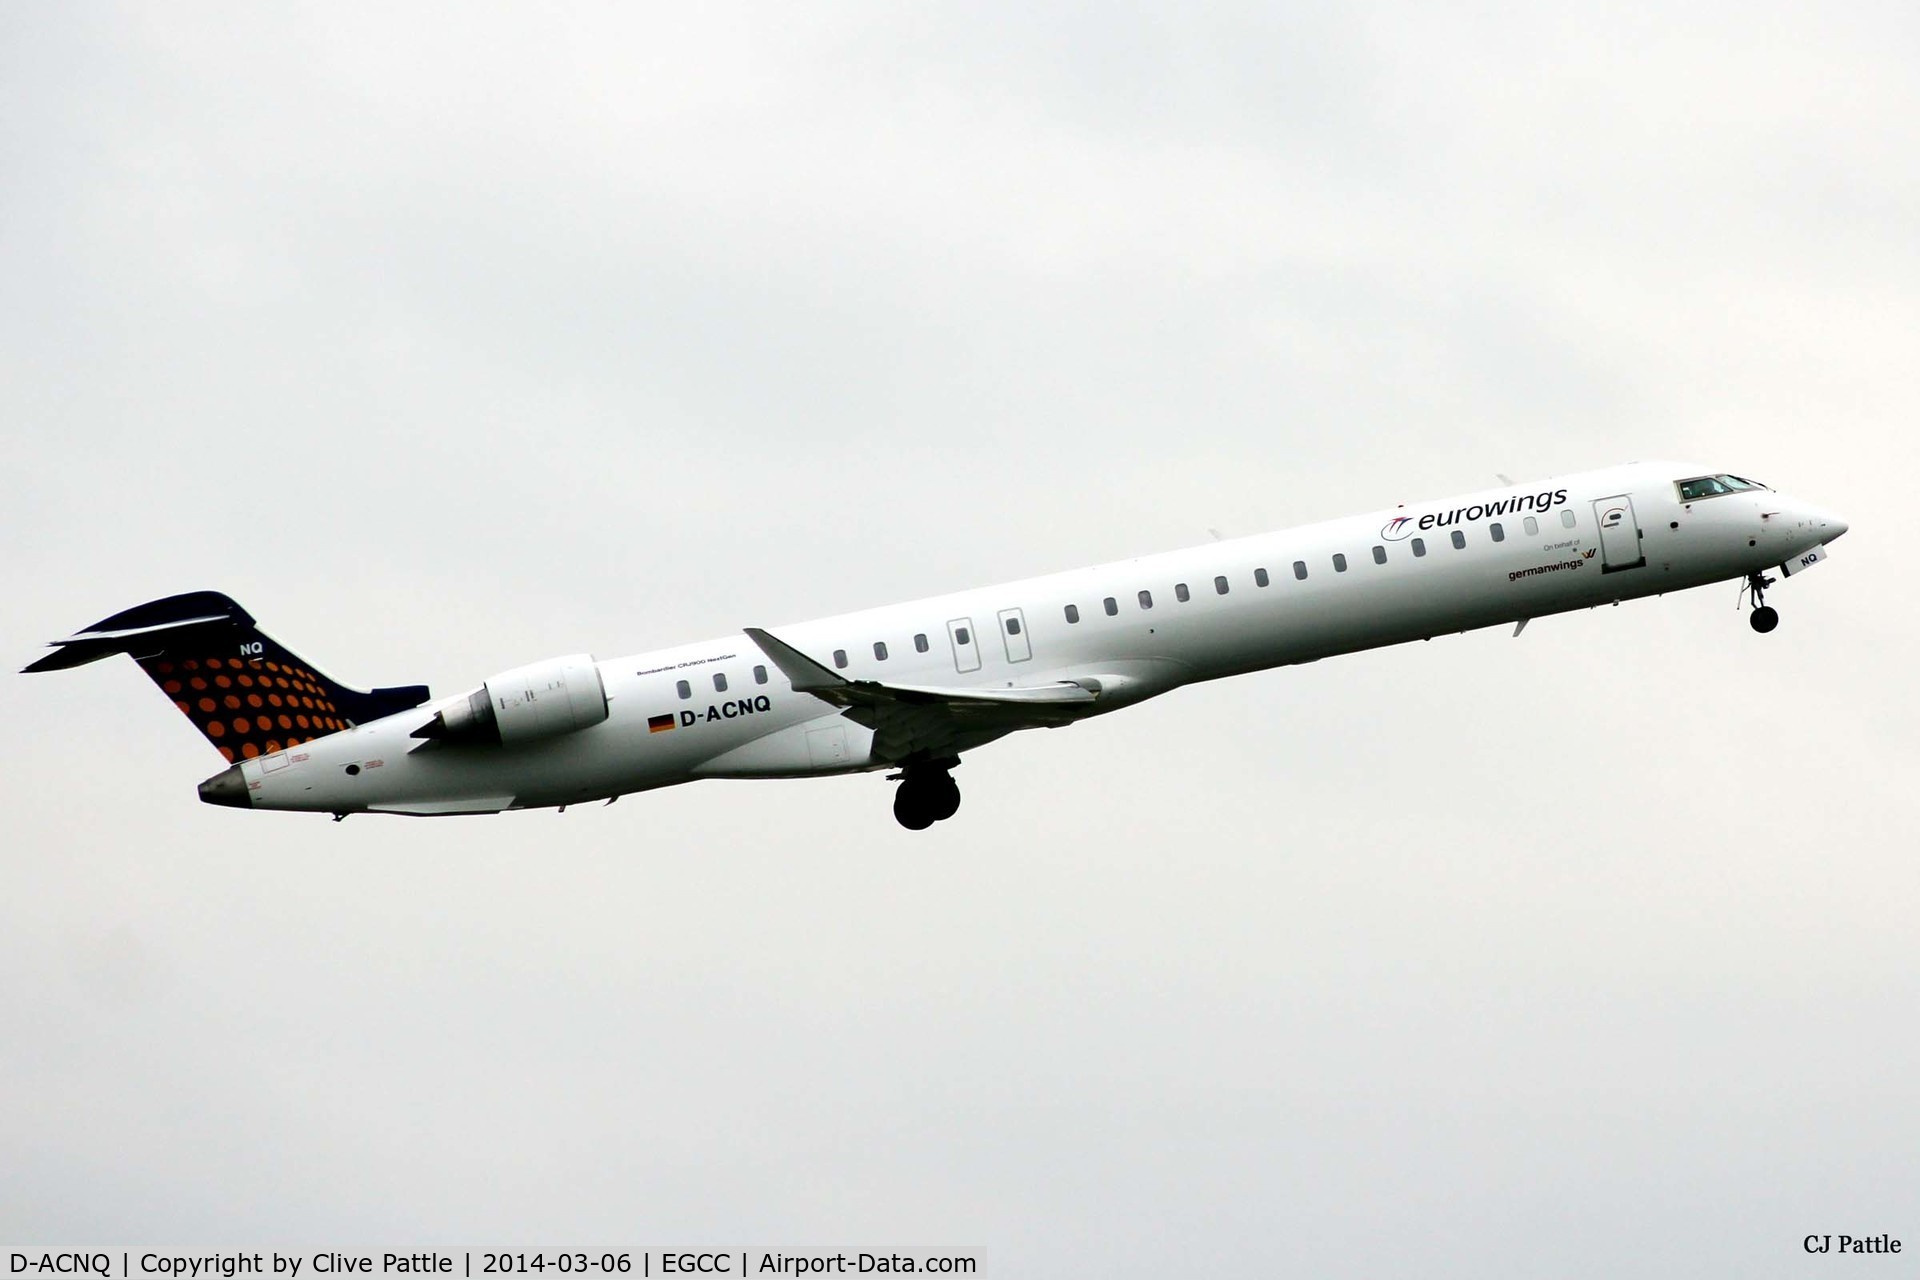 D-ACNQ, 2010 Bombardier CRJ-900LR (CL-600-2D24) C/N 15260, Manchester EGCC departure